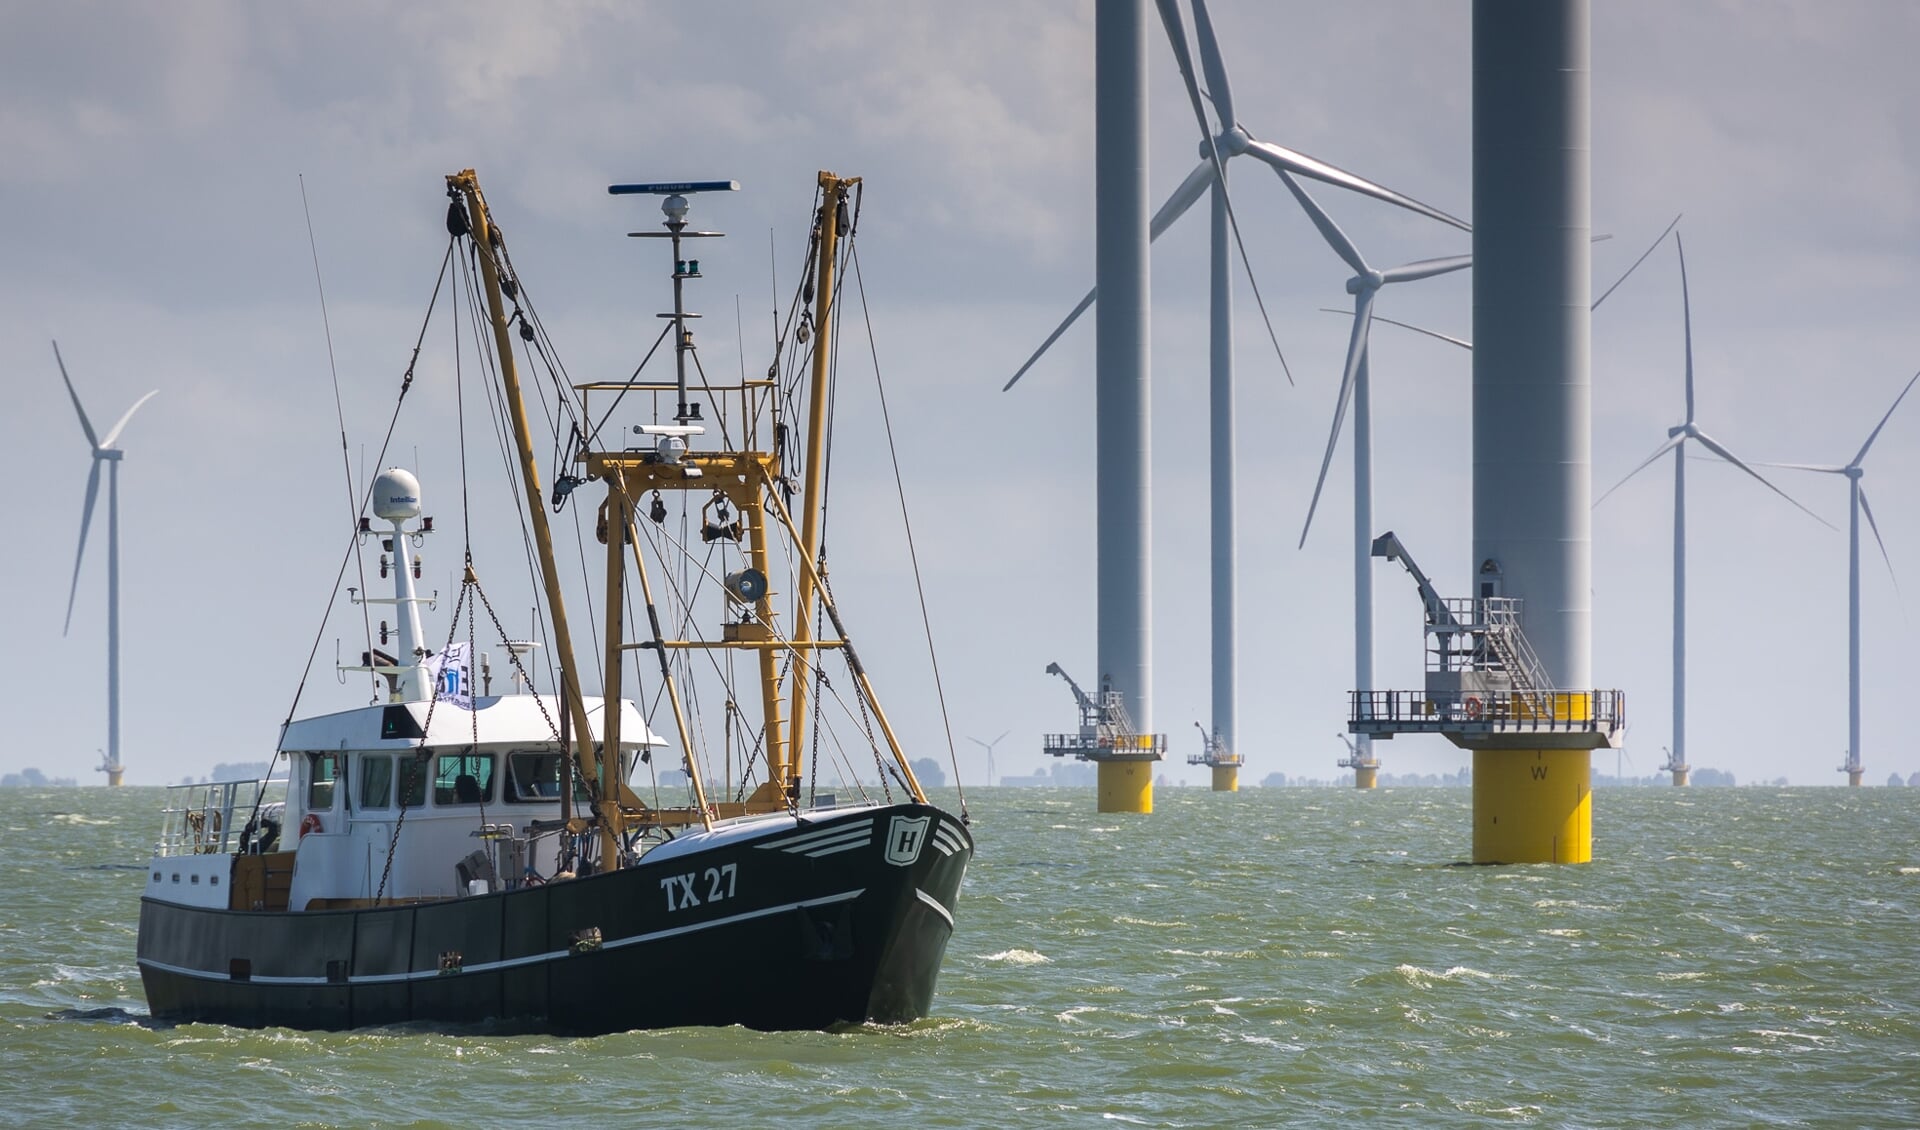 Garnalenkotter TX27 was één van de Texelse vissers die deelnamen aan het protest tegen windmolens op het IJsselmeer.